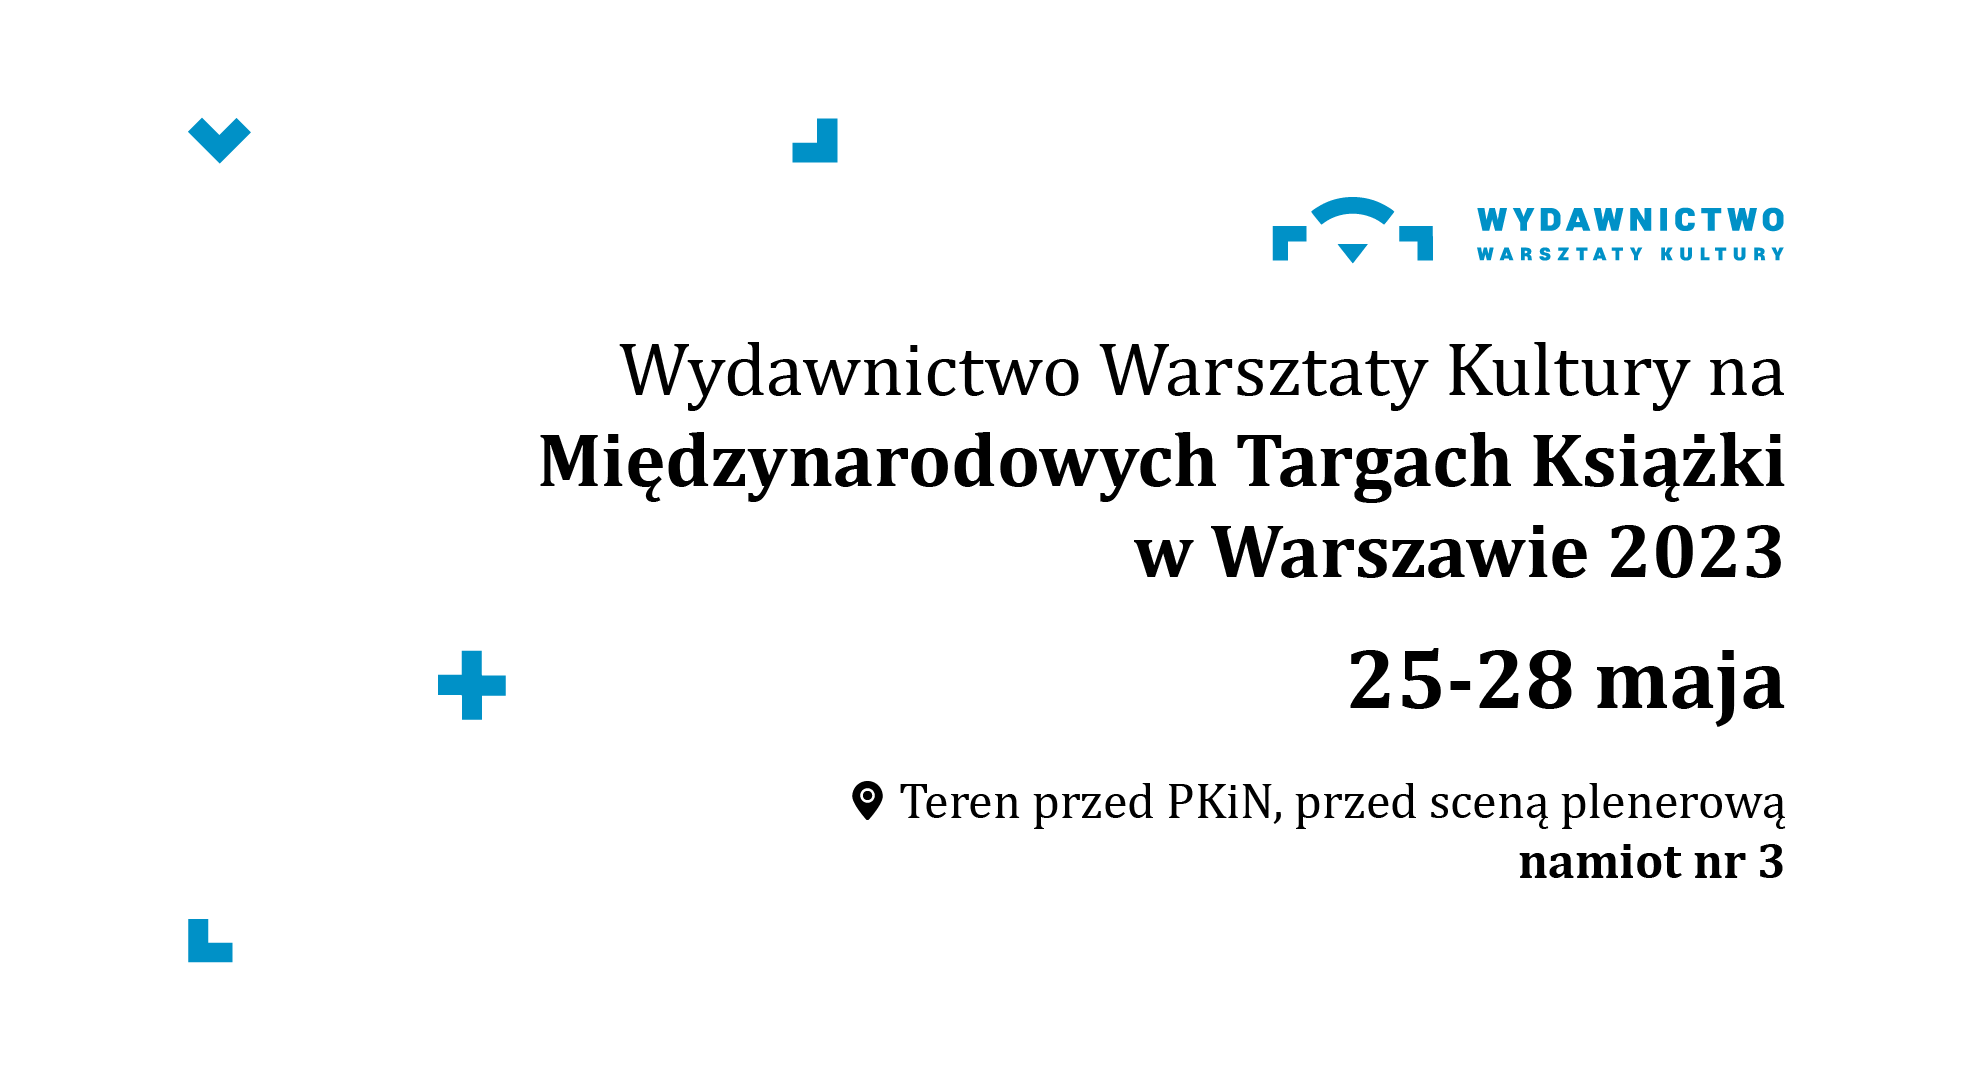 Baner informujący o udziale Warsztatów Kultury w międzynarodowych Targach Warszawskich w dniach 25-28 maja